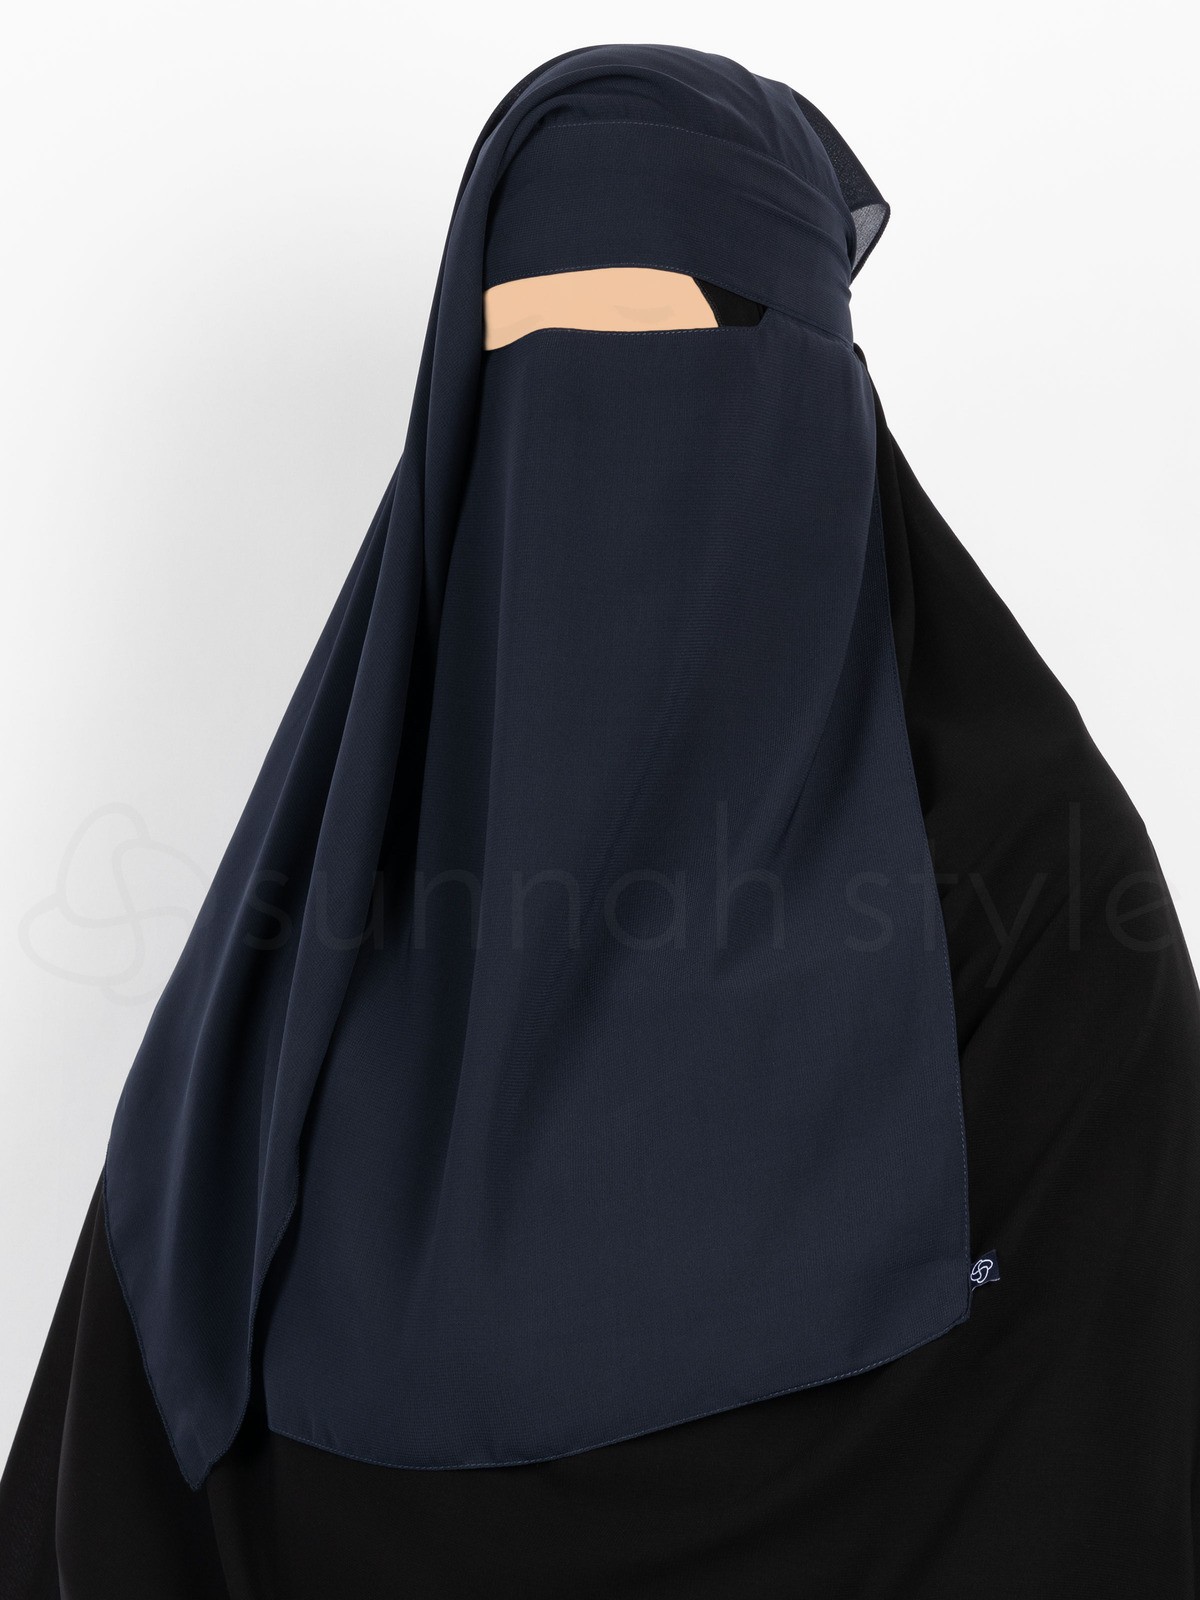 Sunnah Style - Narrow No-Pinch Two Layer Niqab (Navy Blue)